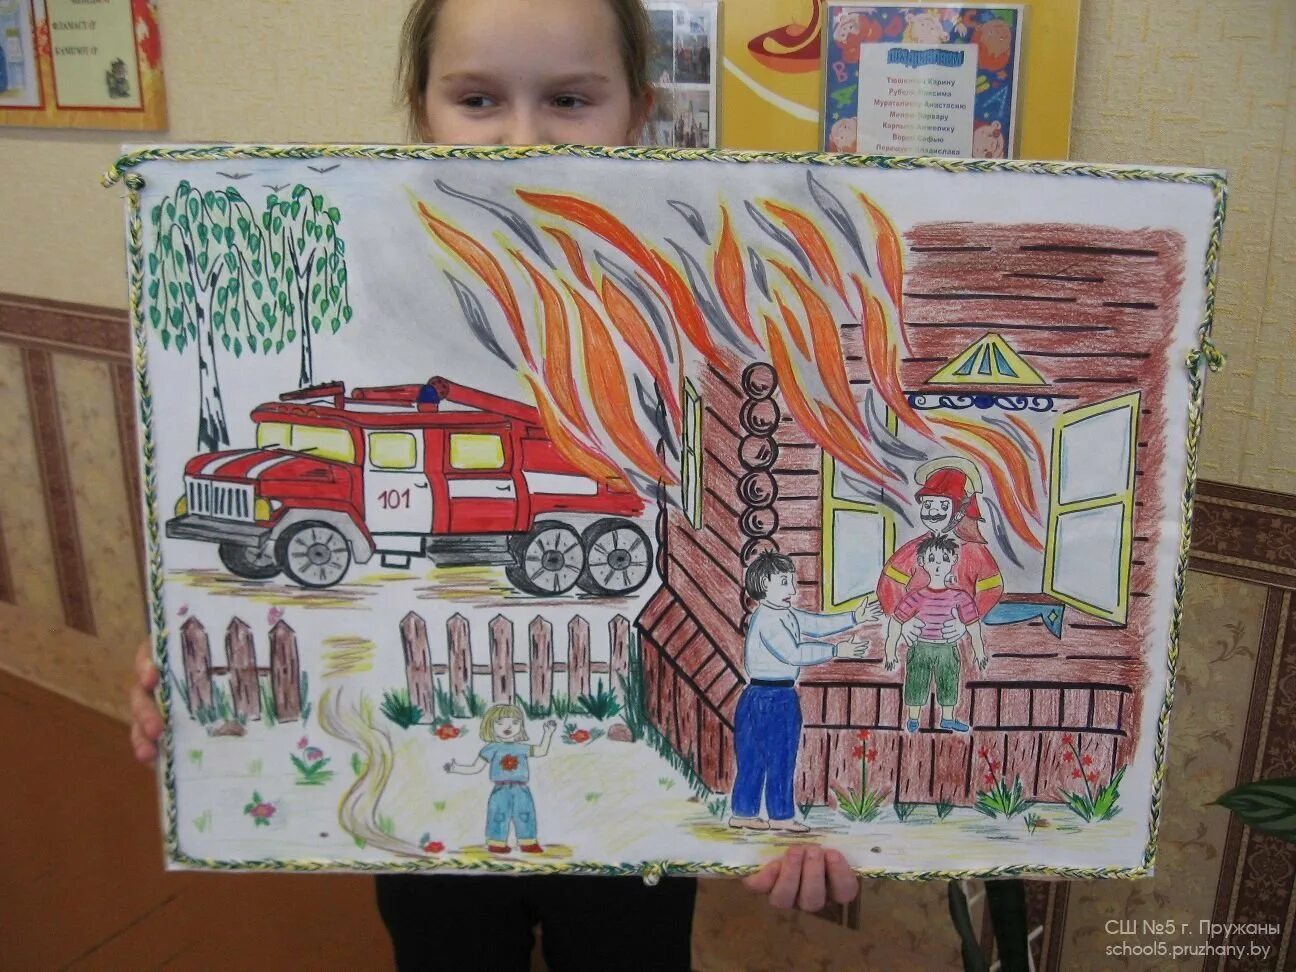 Безопасность тема конкурса. Безопасность глазами детей. Пожарная безопасность глазами детей. Рисунки на пожарную тематику. Поделки на противопожарную тему.